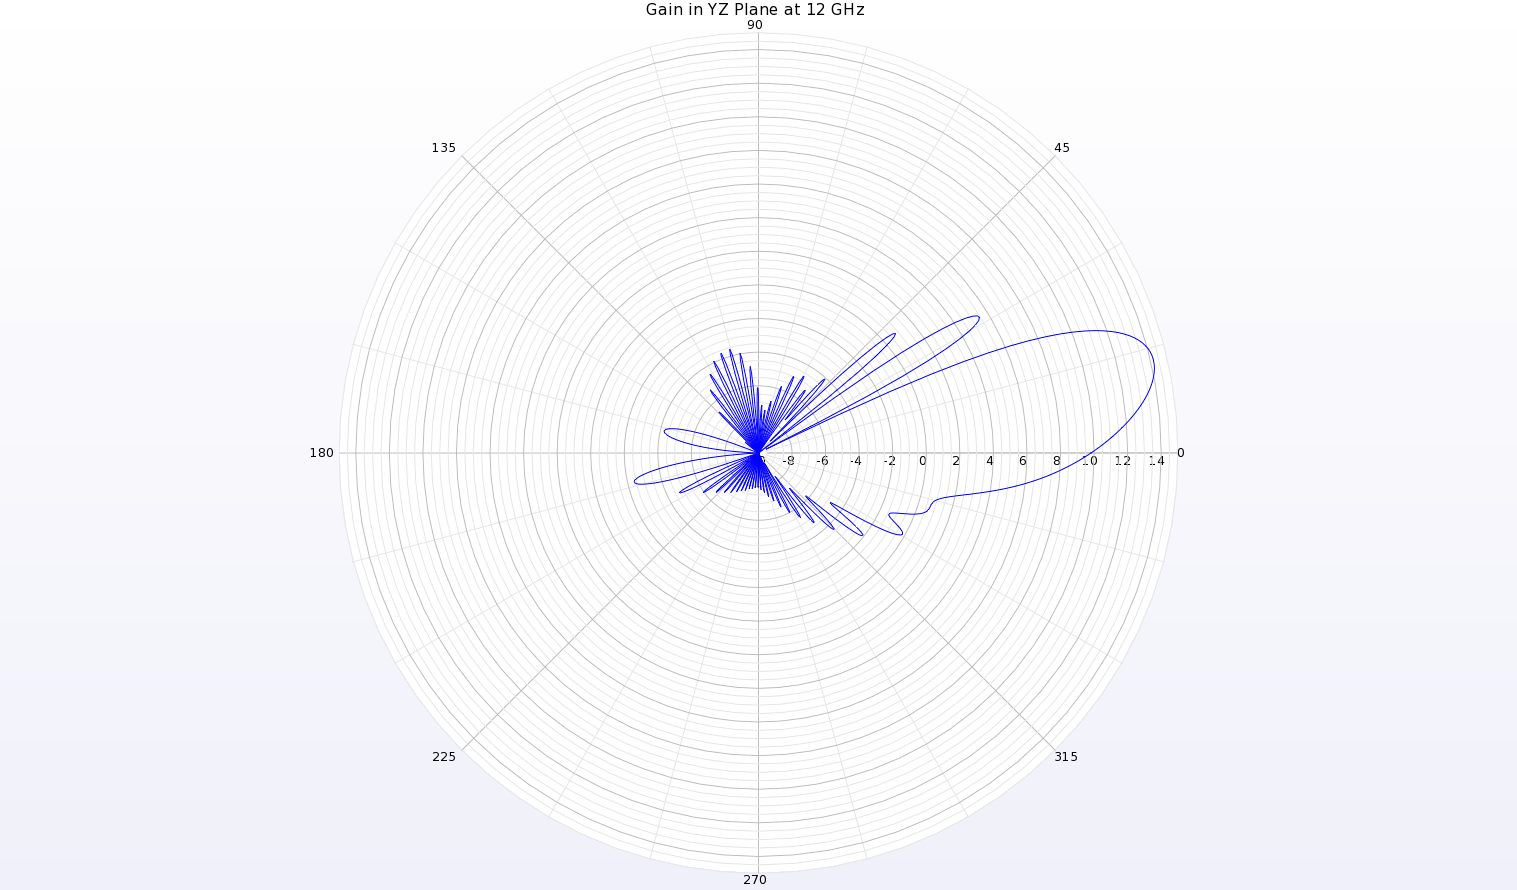 图 19：天线 YZ 平面上 12 千兆赫的增益模式极坐标图显示，θ=13 度处的波束峰值增益为 14.2 dBi。